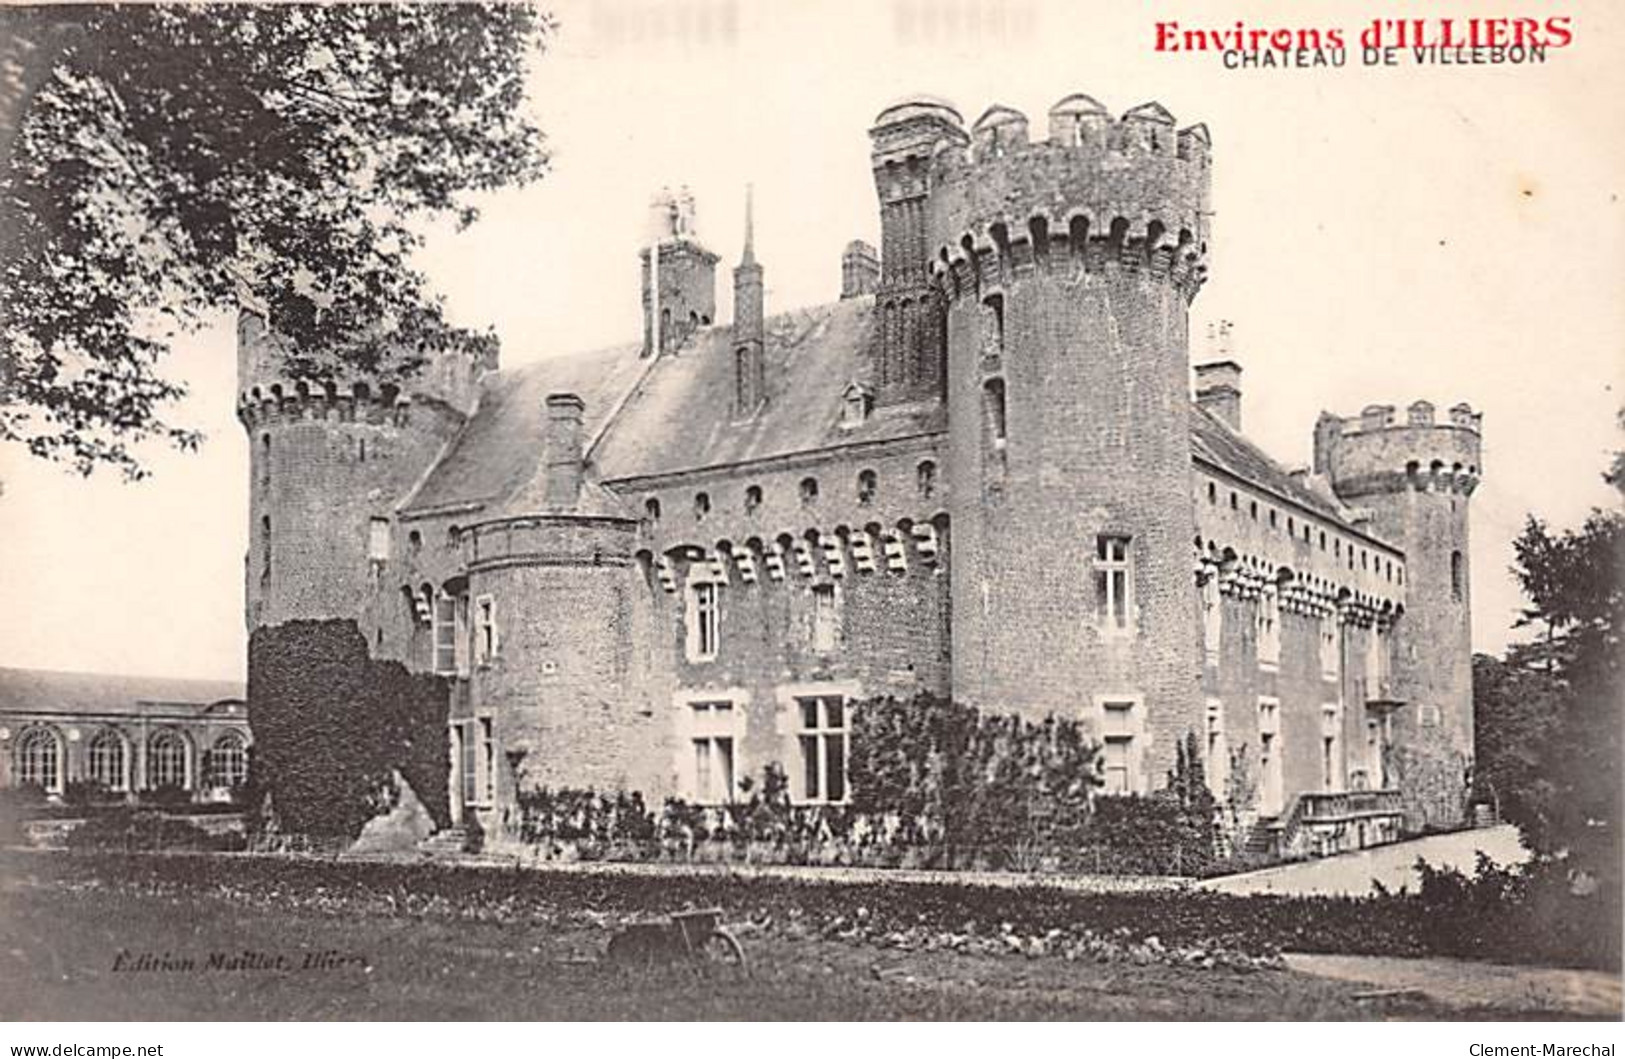 Environs D'ILLIERS - Château De Villebon - Très Bon état - Illiers-Combray